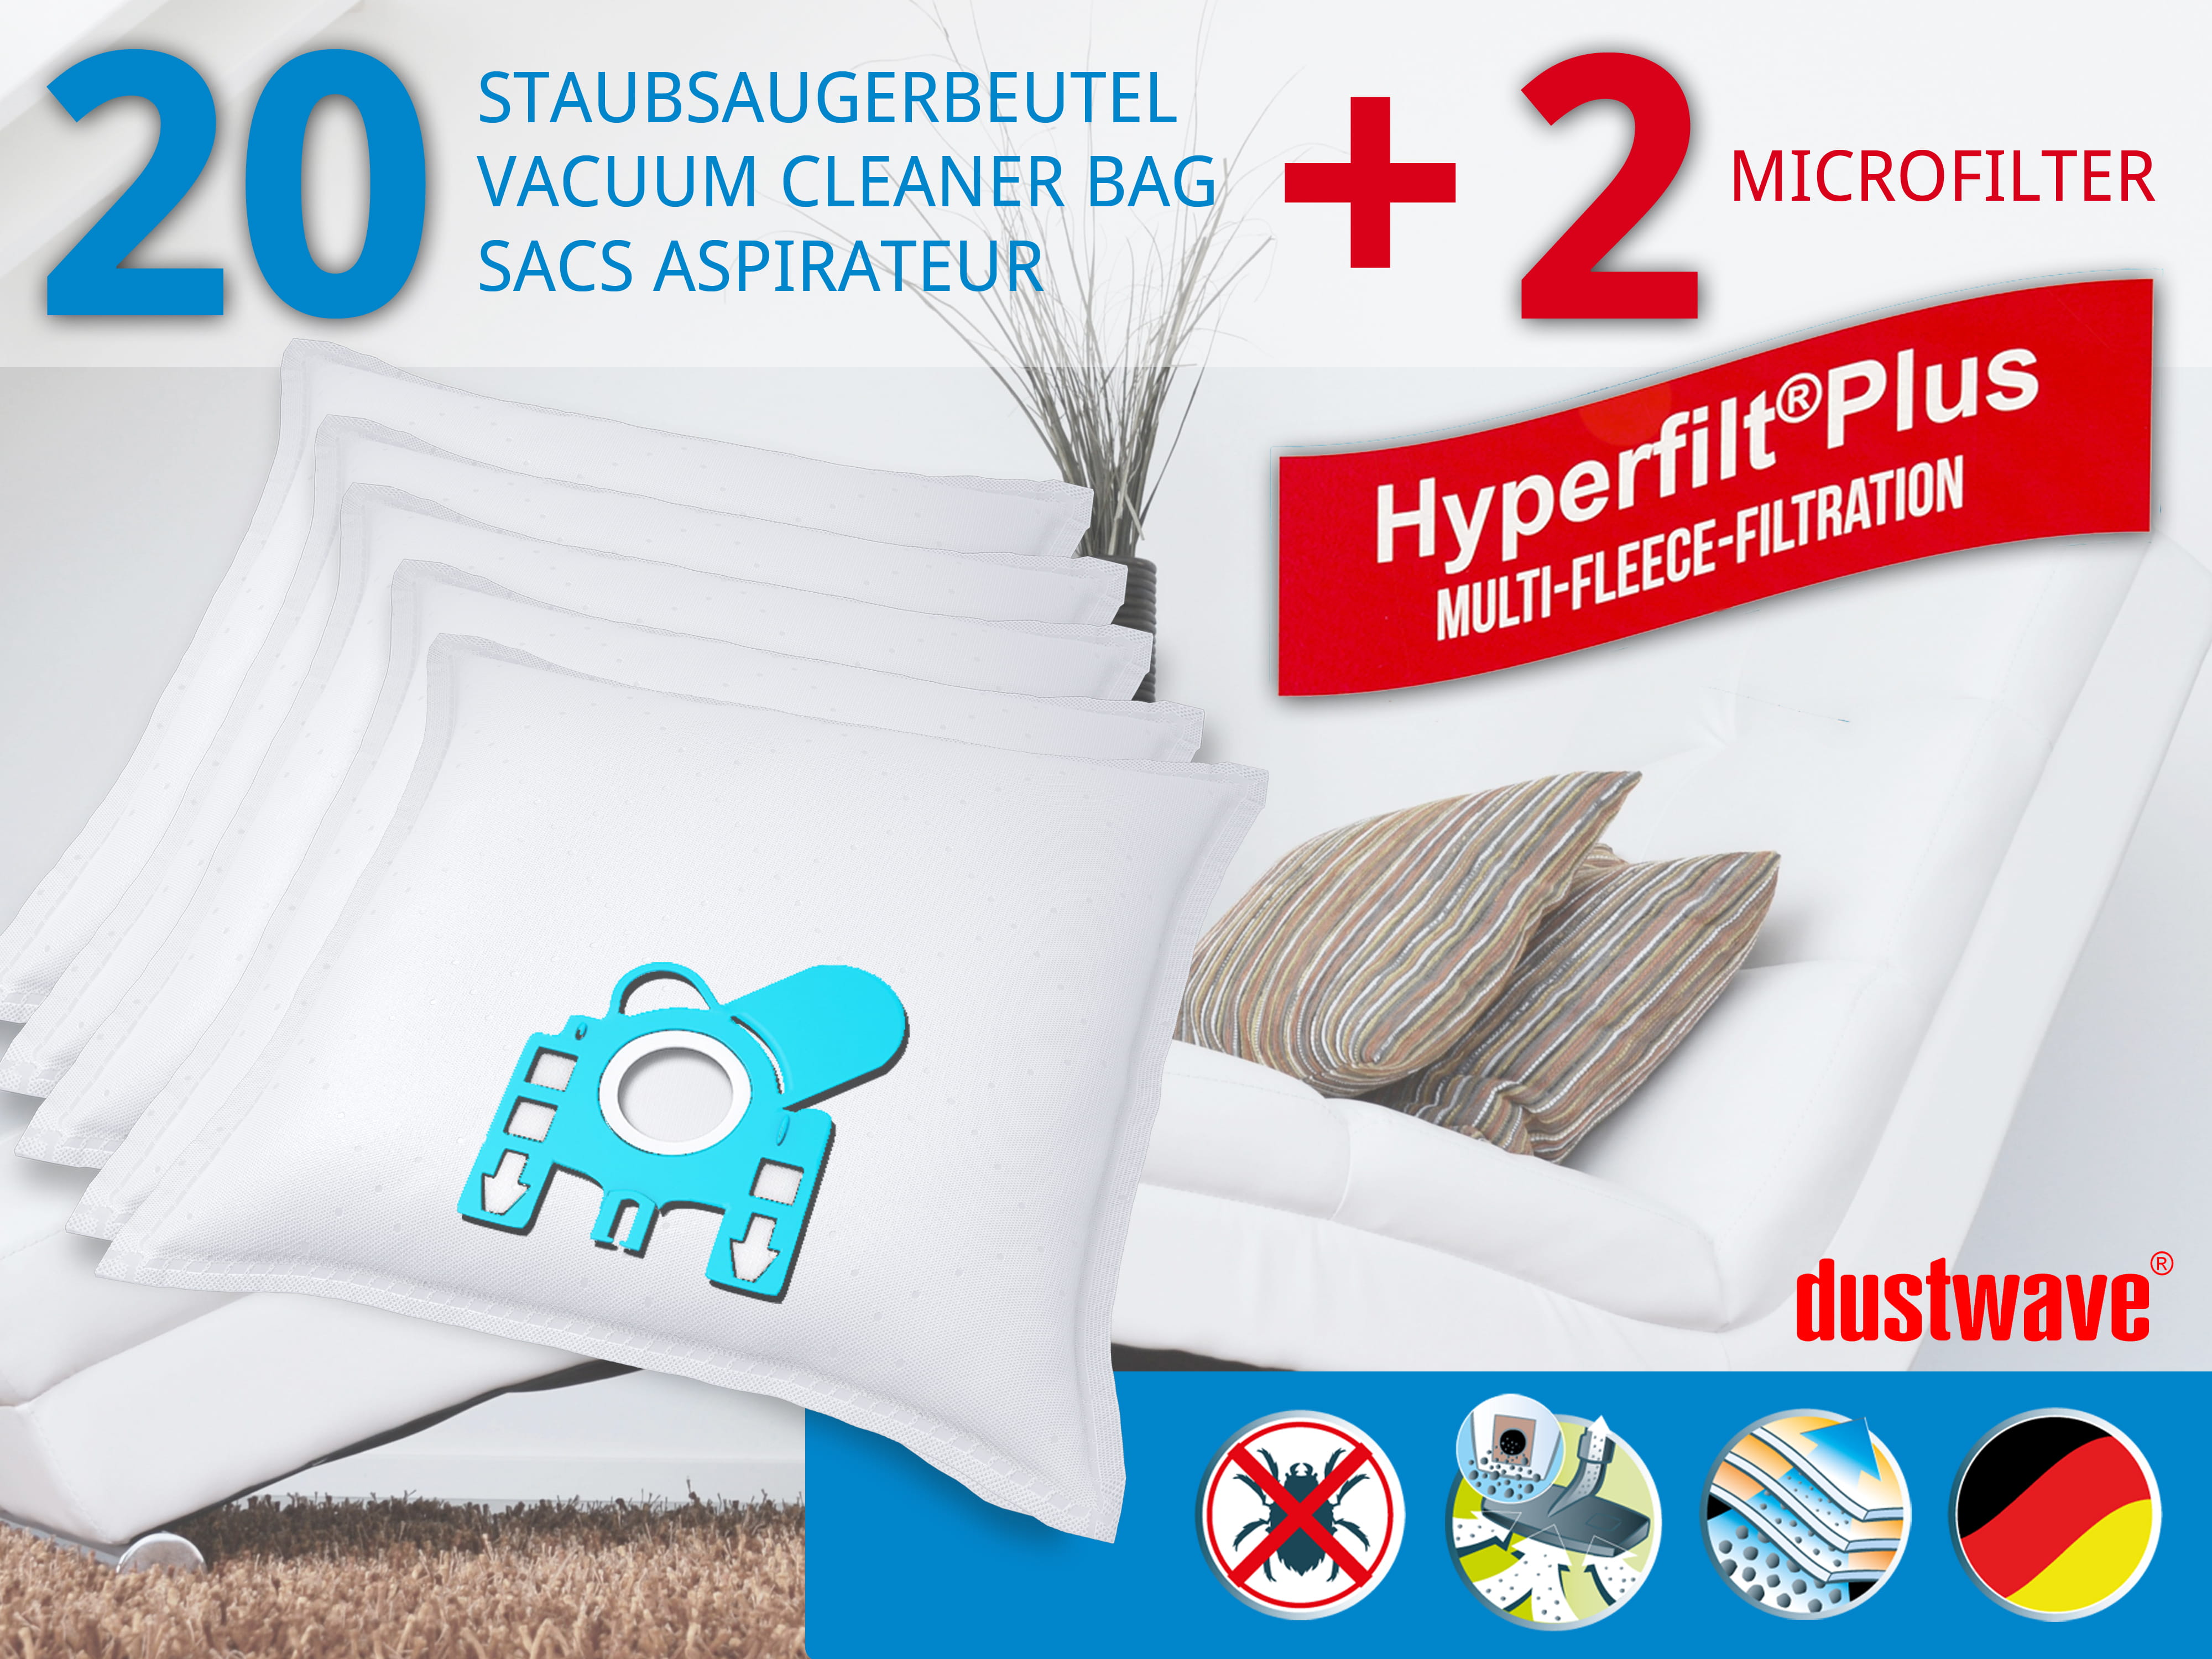 Dustwave® 20 Staubsaugerbeutel für Miele S648 / S 648 - hocheffizient, mehrlagiges Mikrovlies mit Hygieneverschluss - Made in Germany